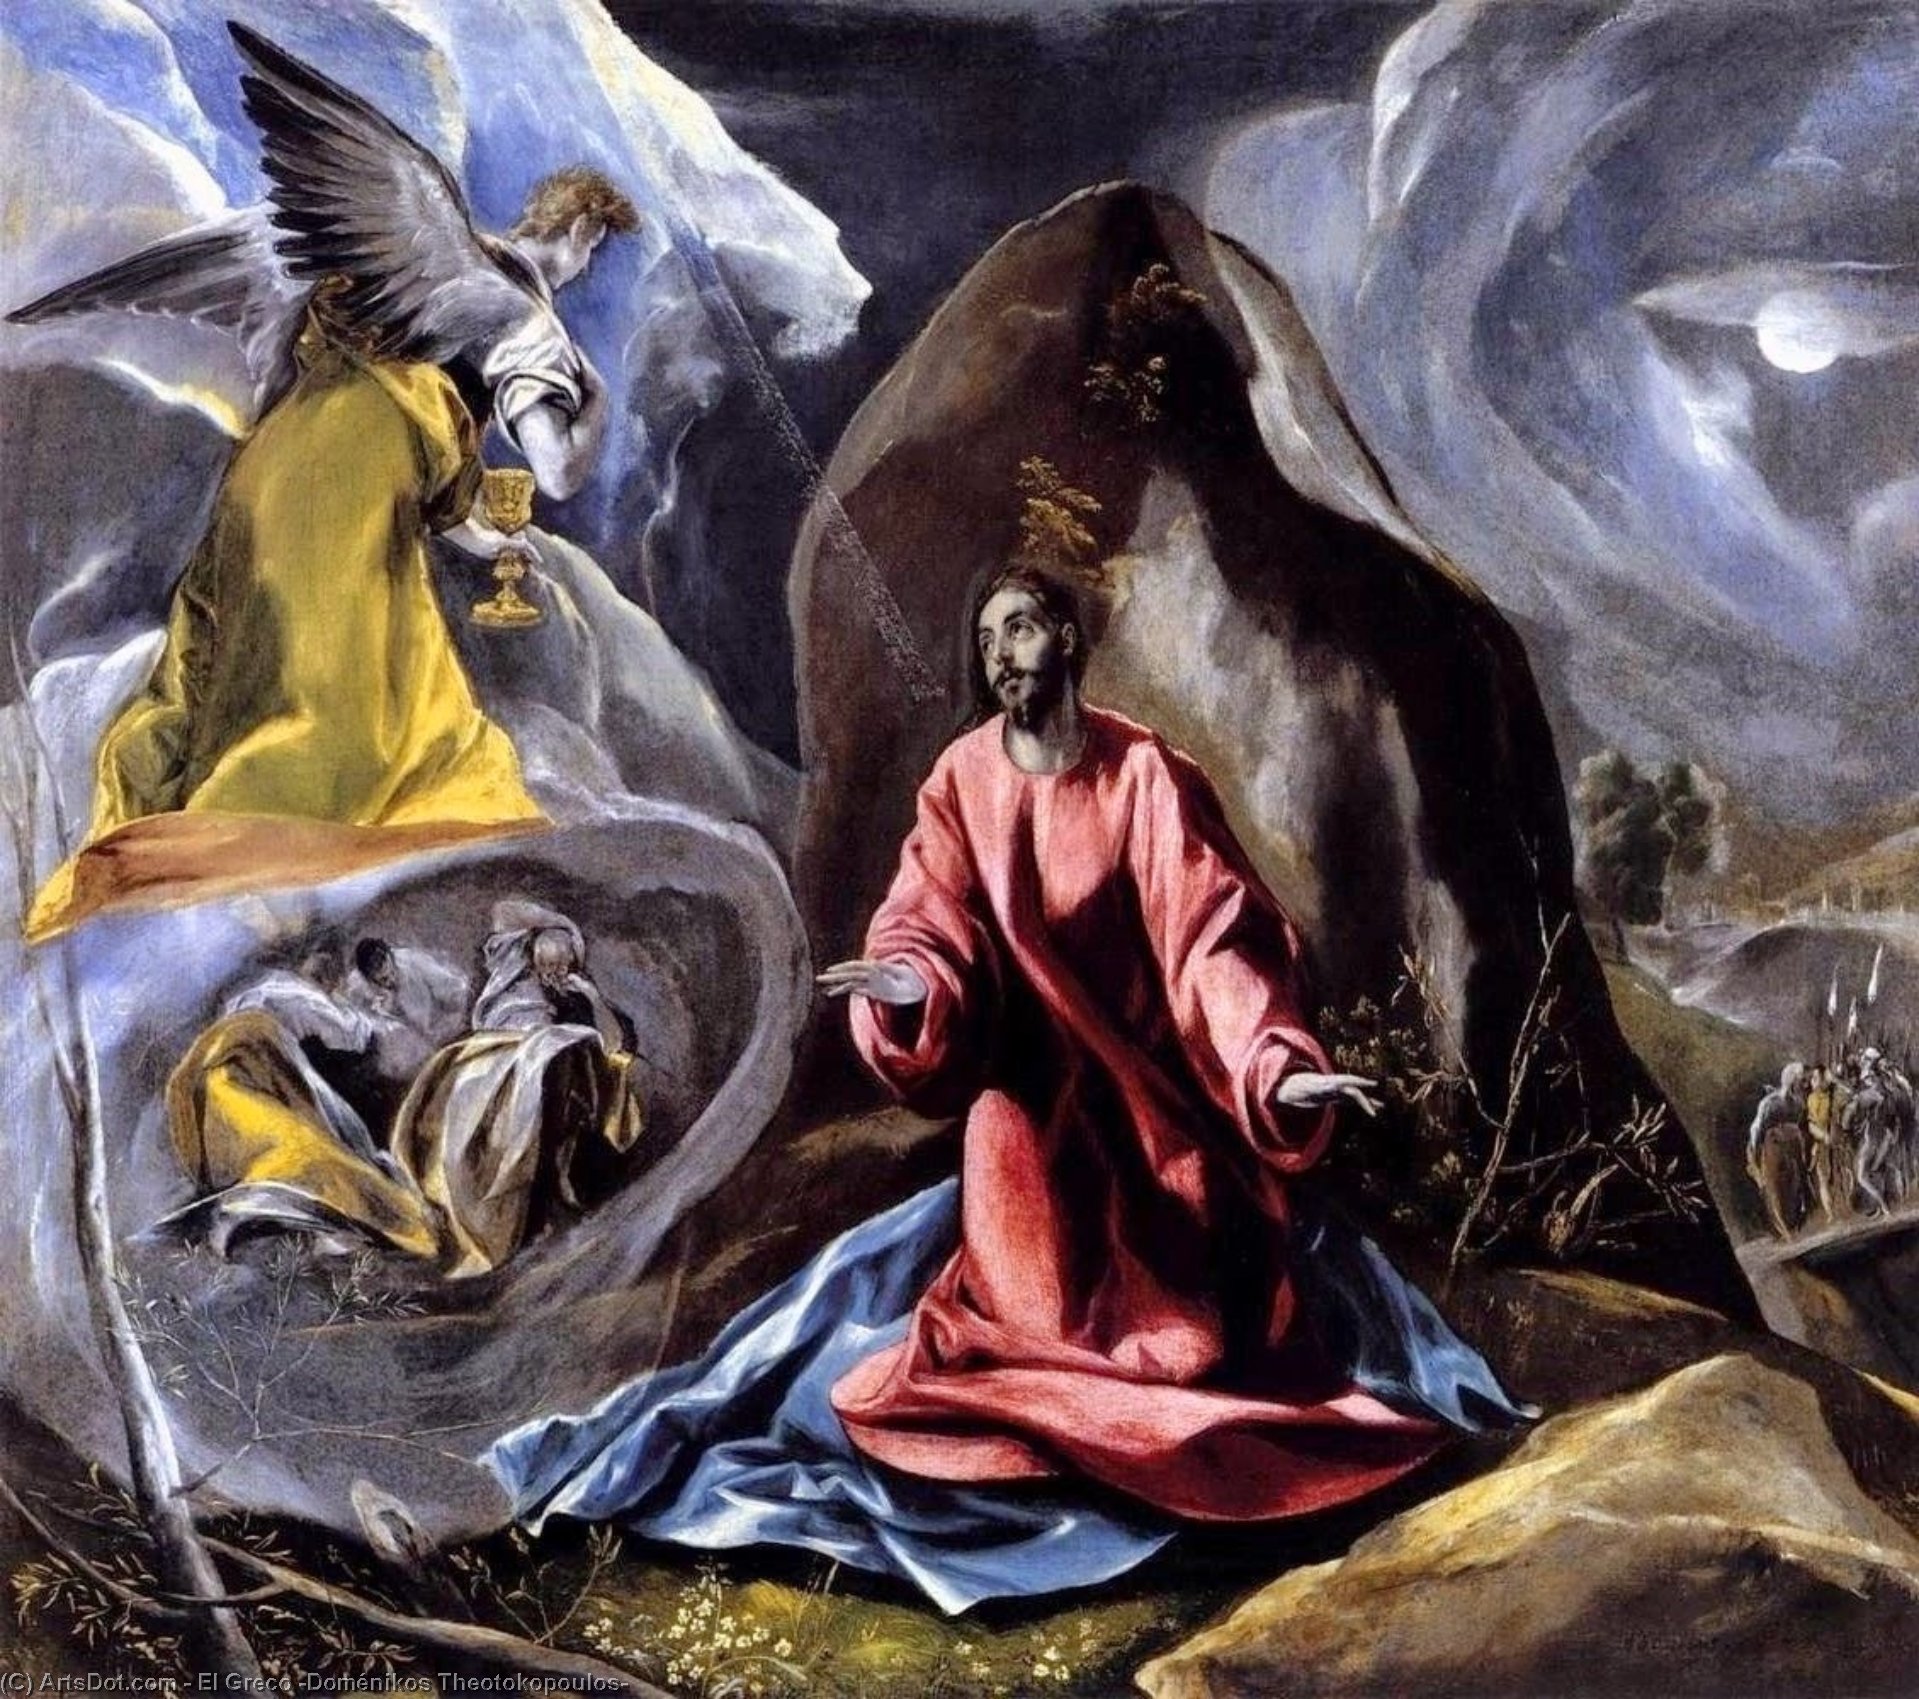 WikiOO.org - Encyclopedia of Fine Arts - Malba, Artwork El Greco (Doménikos Theotokopoulos) - The Agony in the Garden